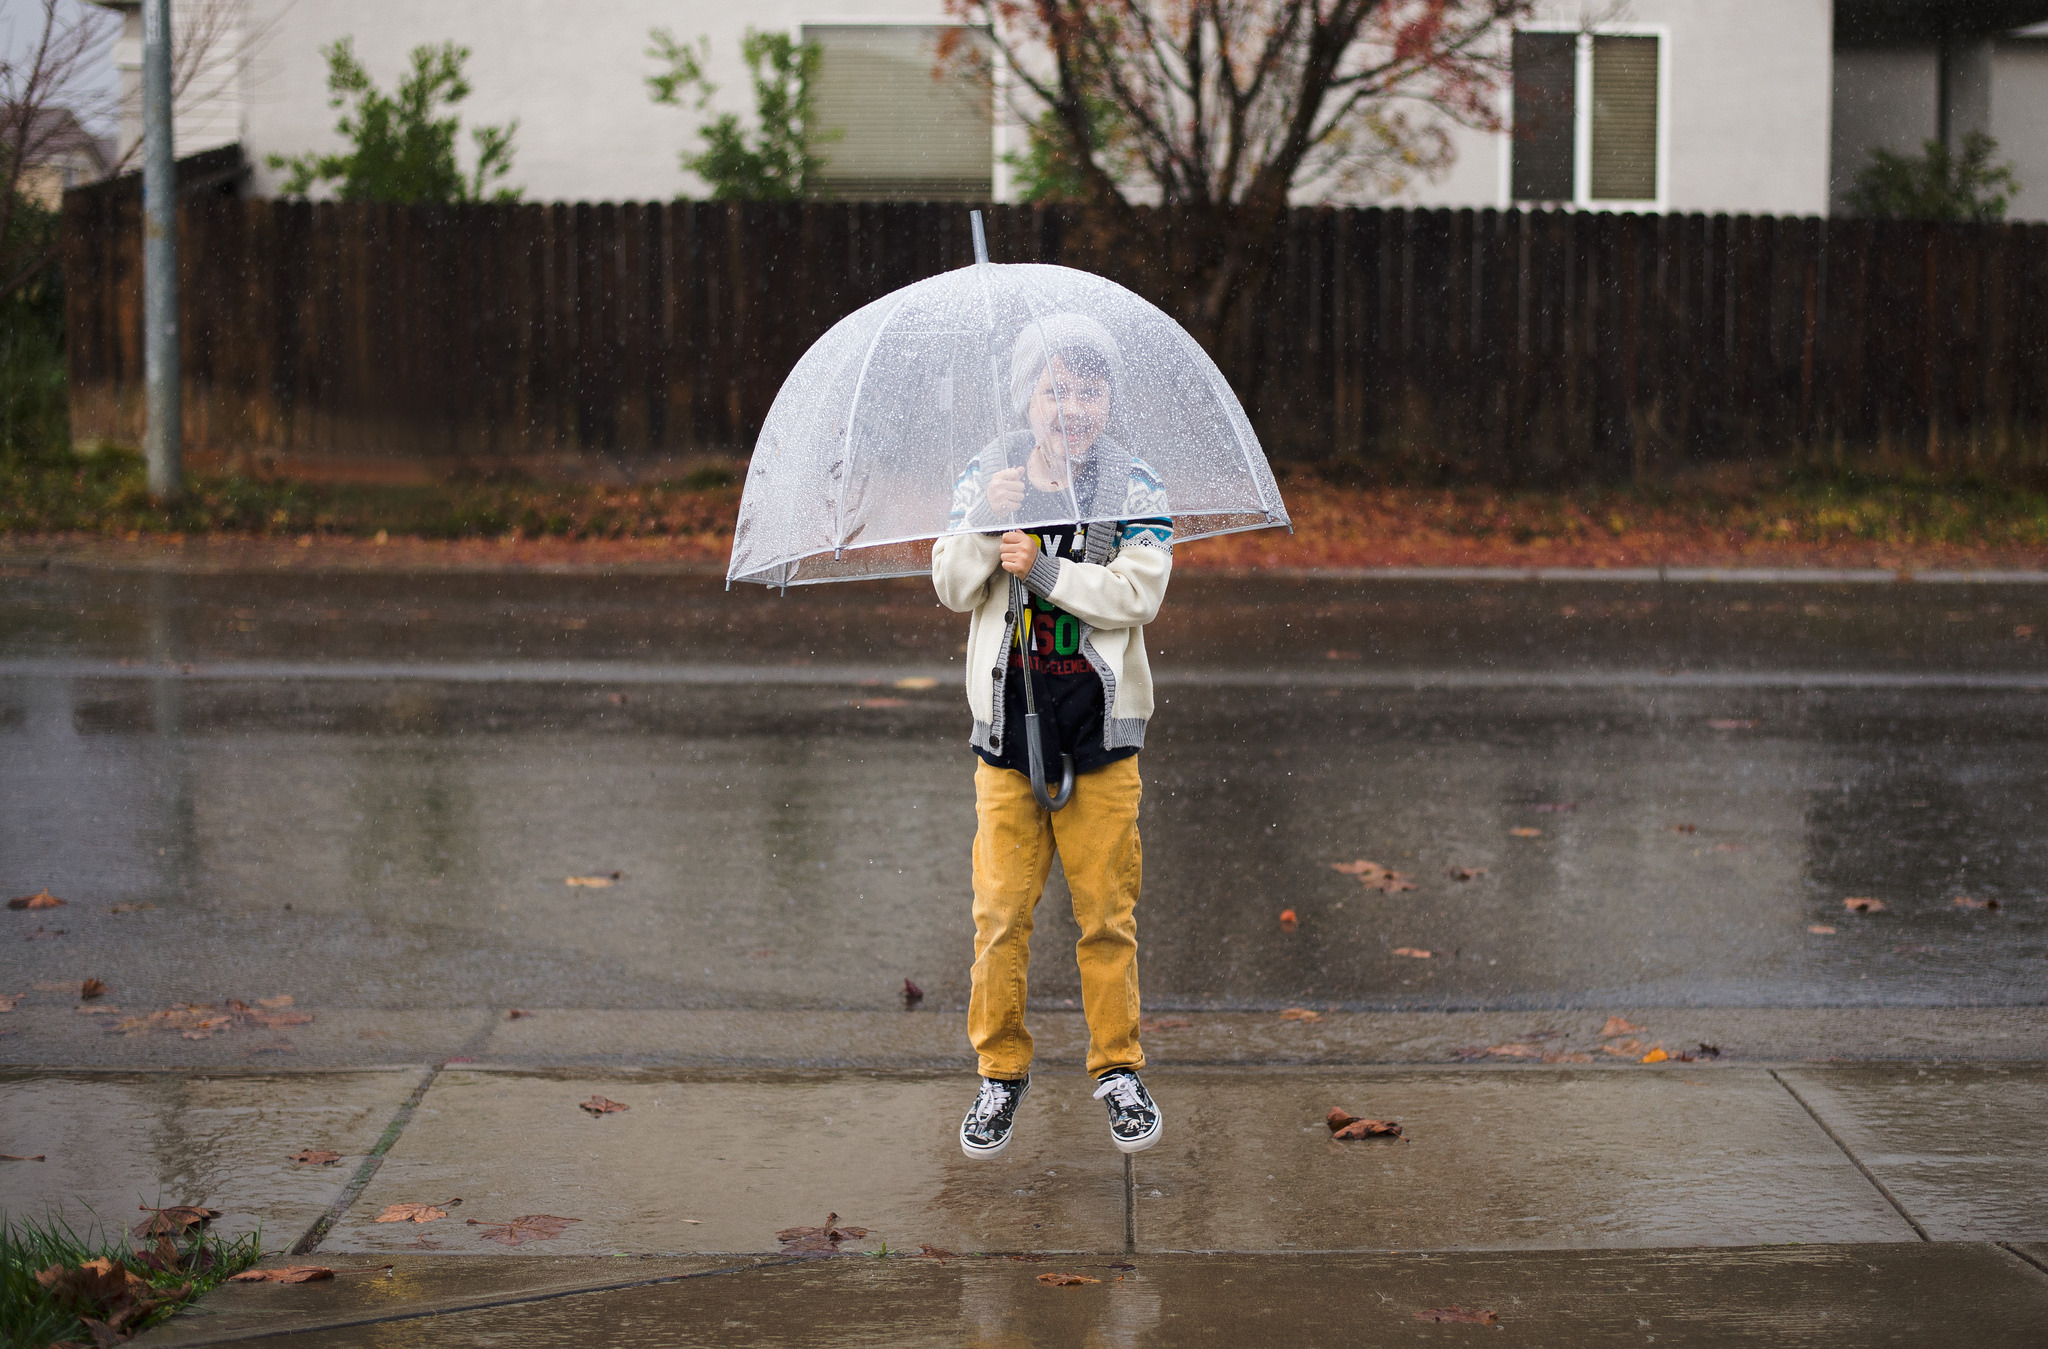 Дети под зонтиком. Мальчик с зонтом. Дети под зонтом. Мальчик под зонтиком. Зонтик для детей.